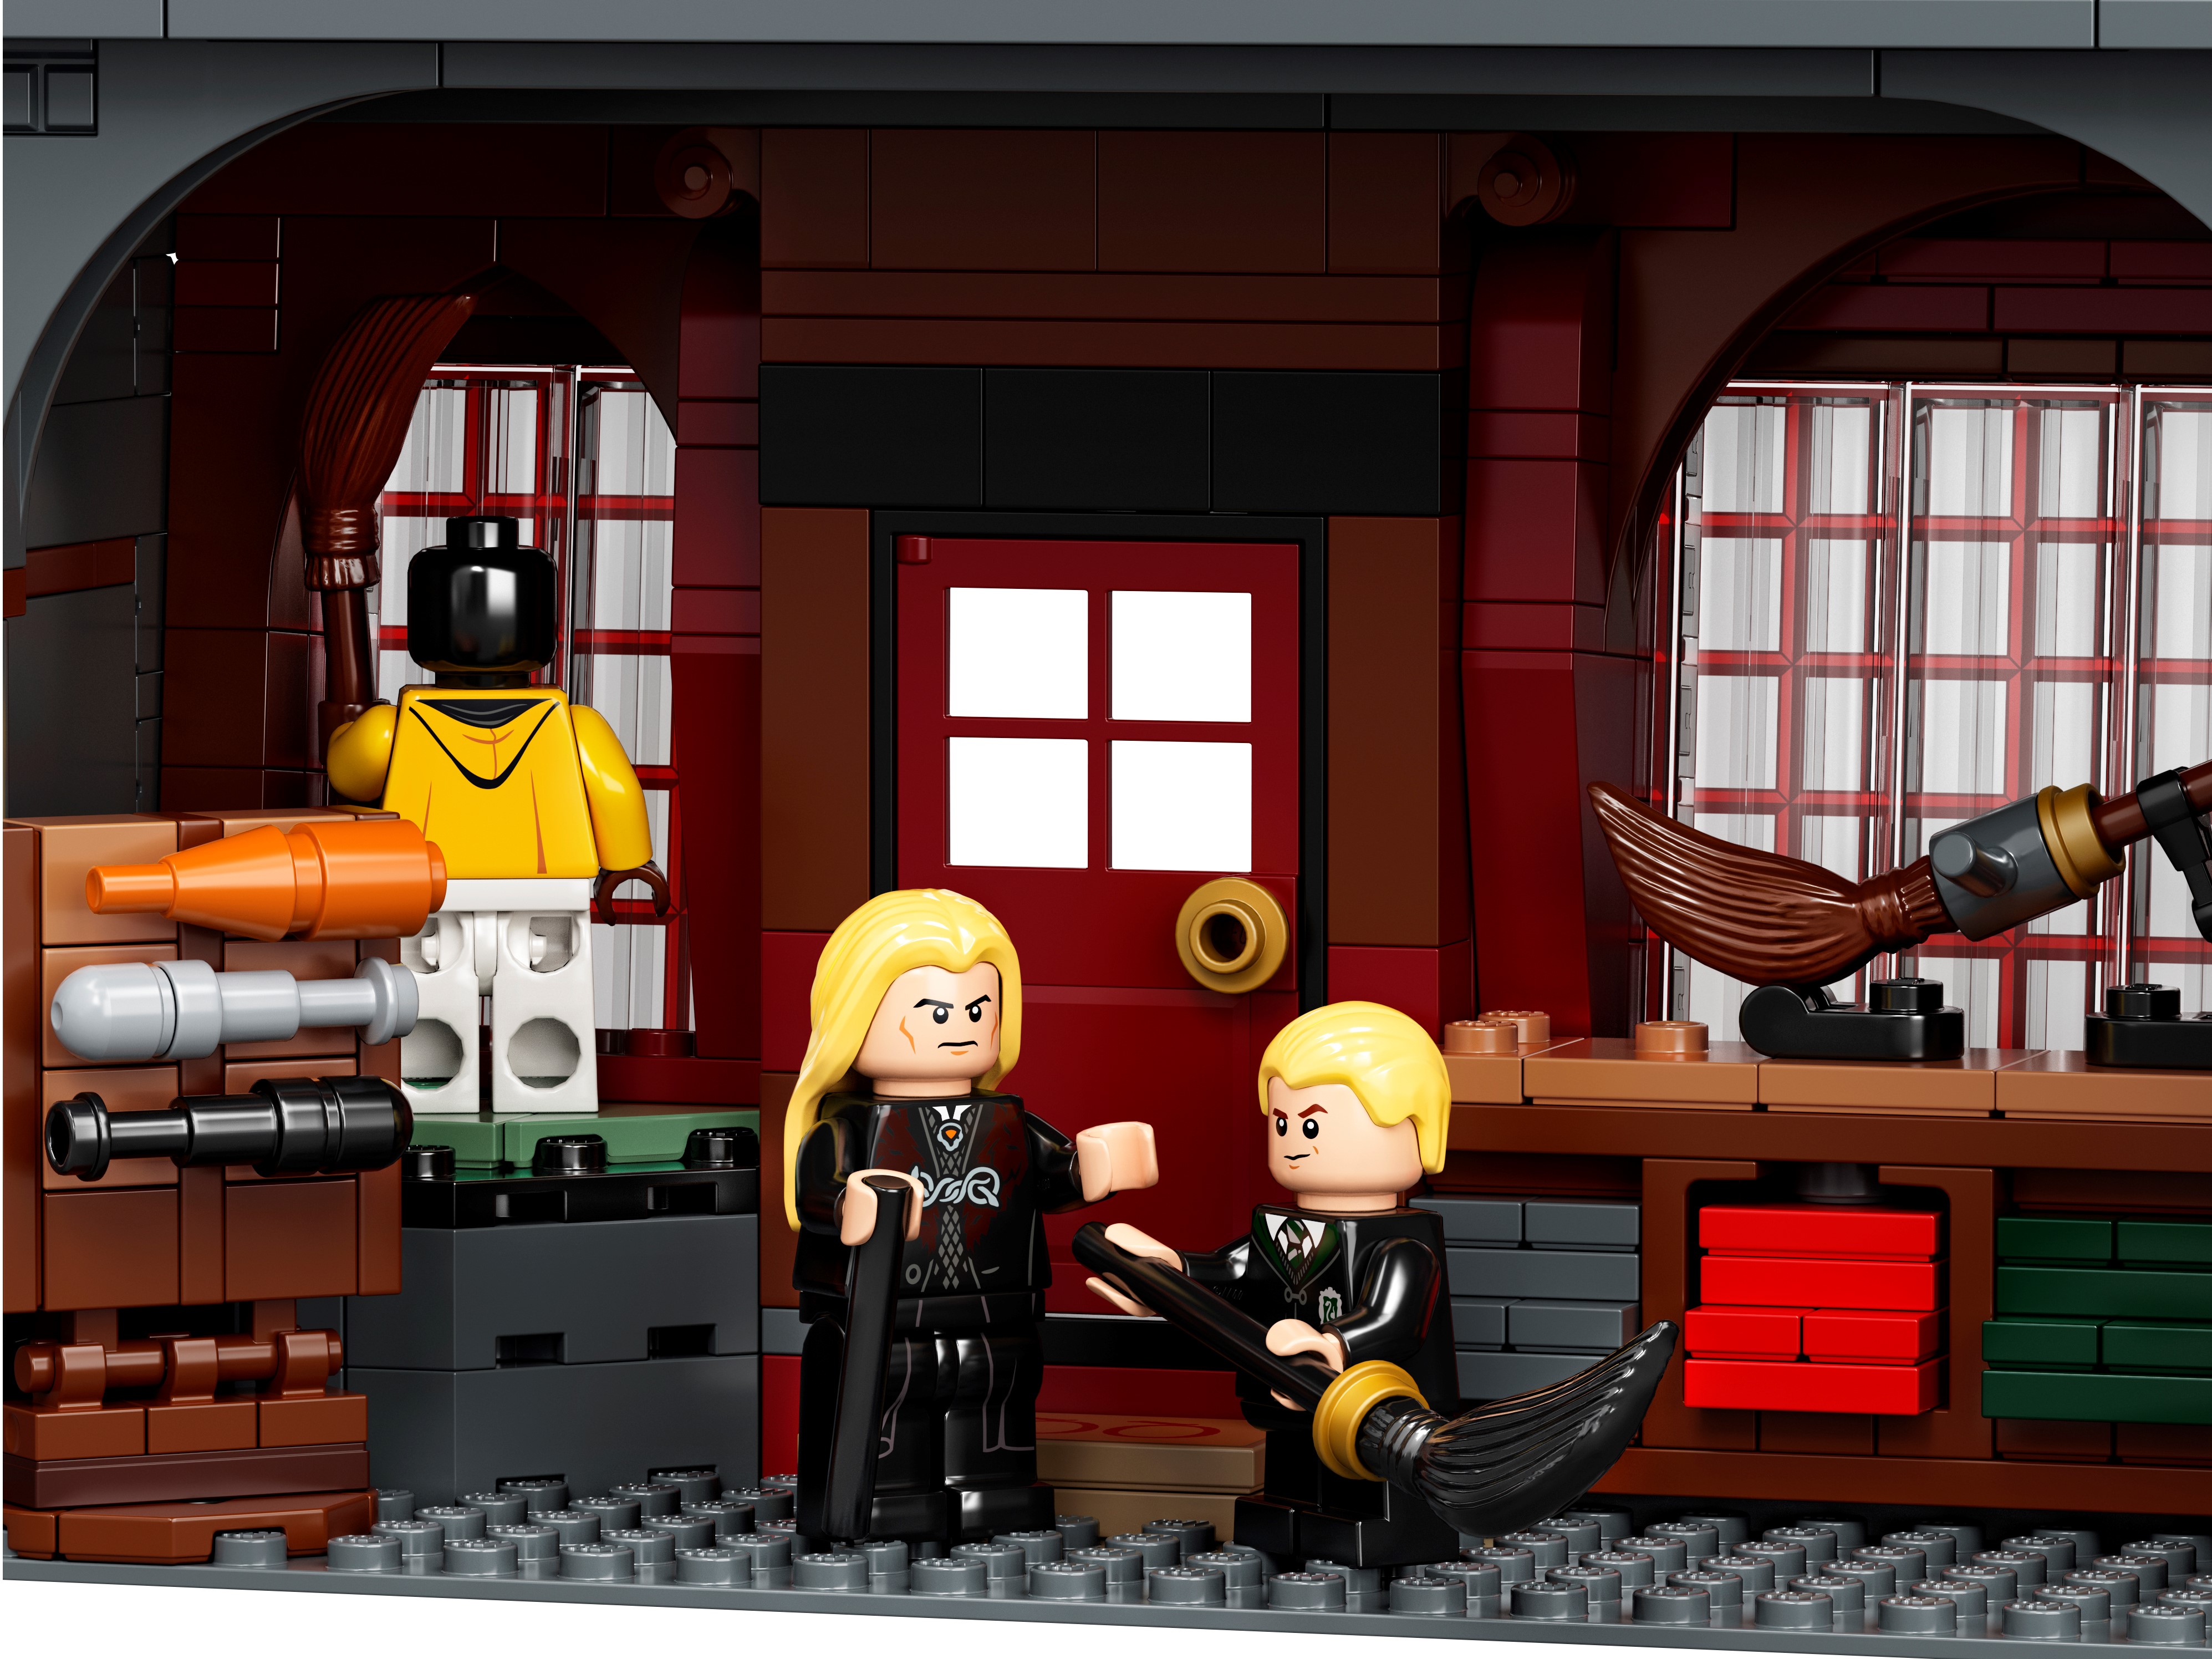 Lego Harry Potter 75978 Le Chemin de Traverse